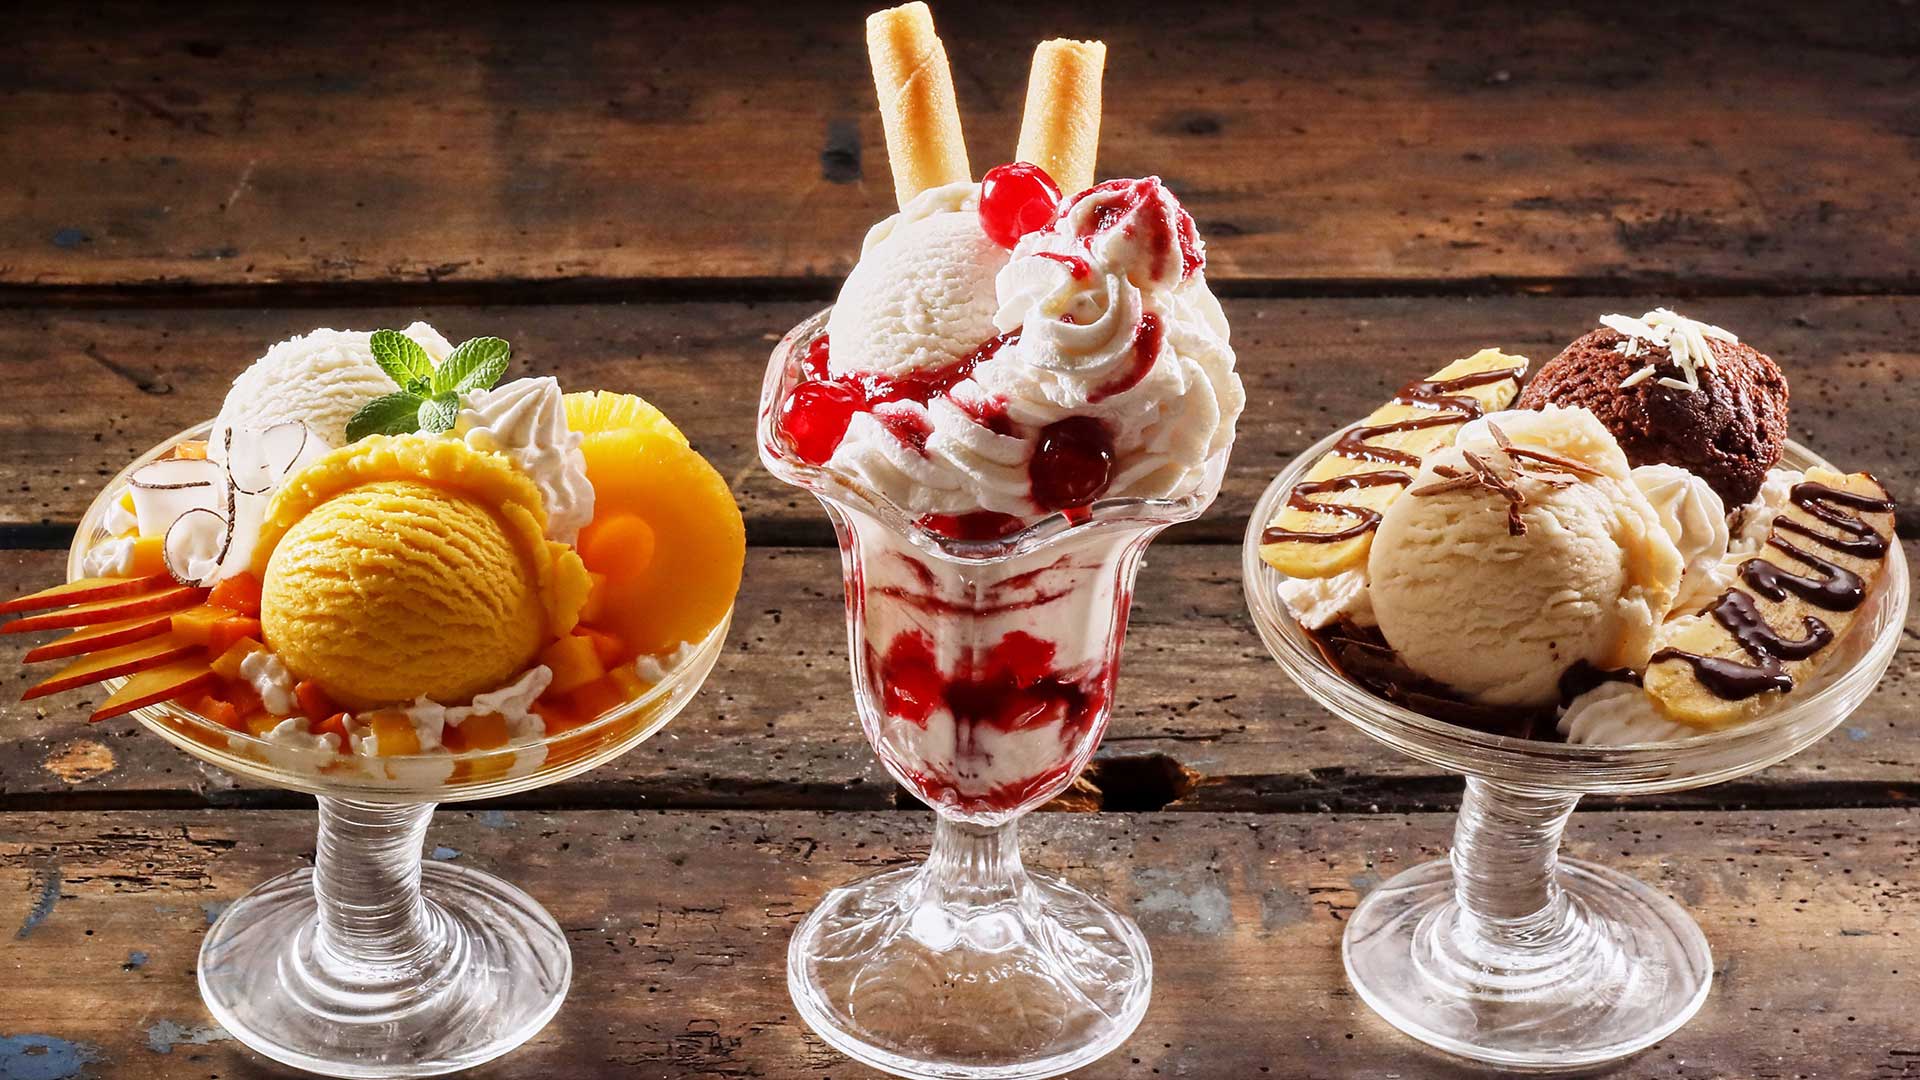 CnC Ice Cream Desserts